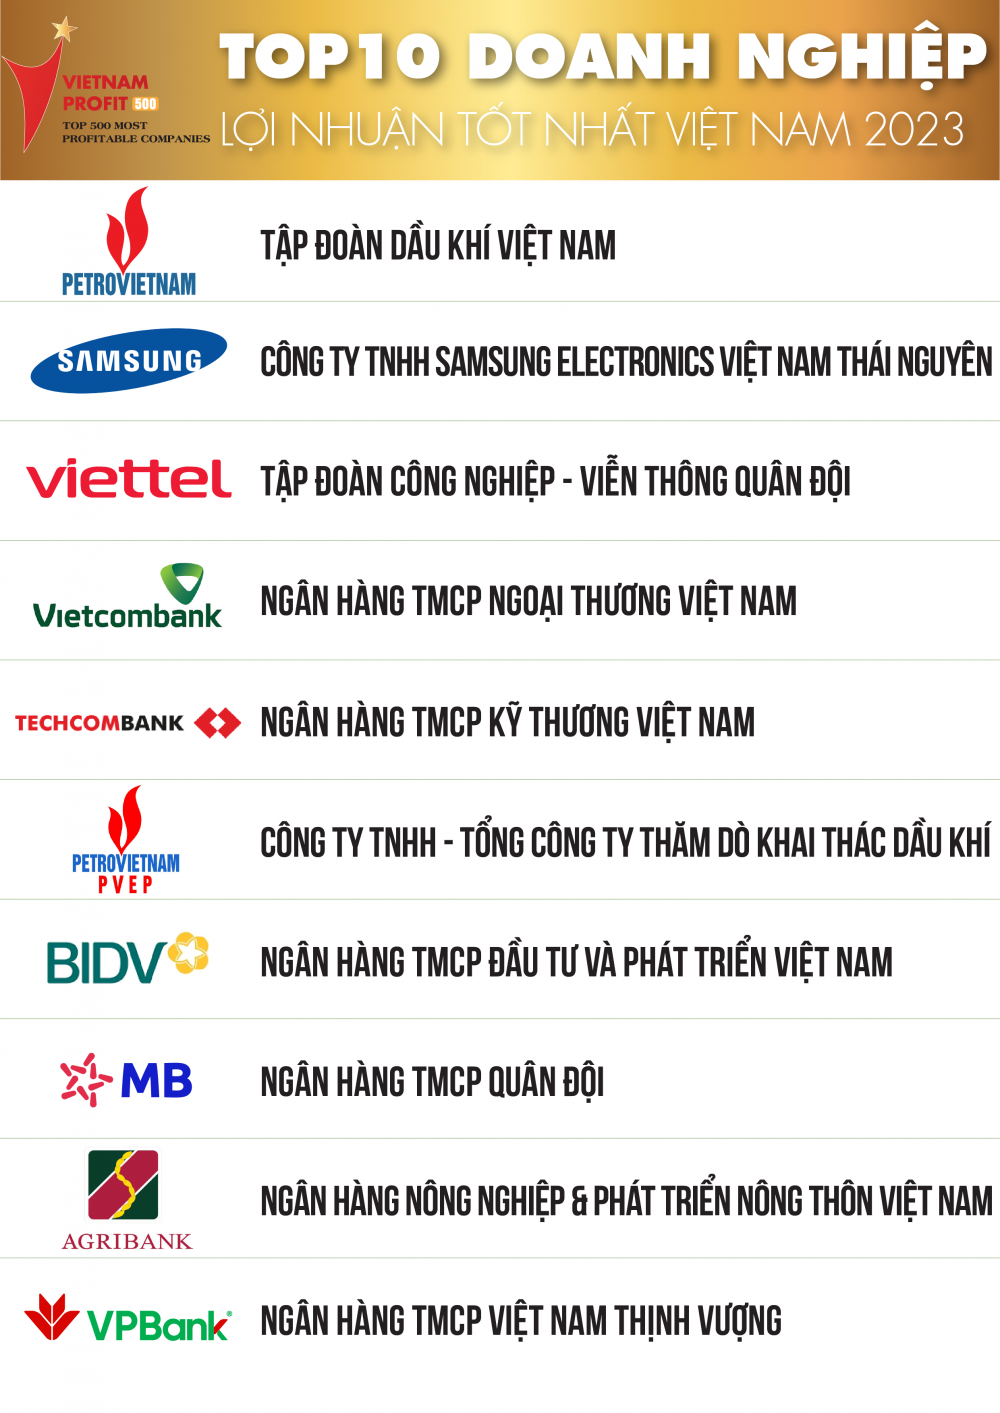 6 đại diện ngành ngân hàng nằm trong top 10 doanh nghiệp lợi nhuận tốt nhất Việt Nam 2023